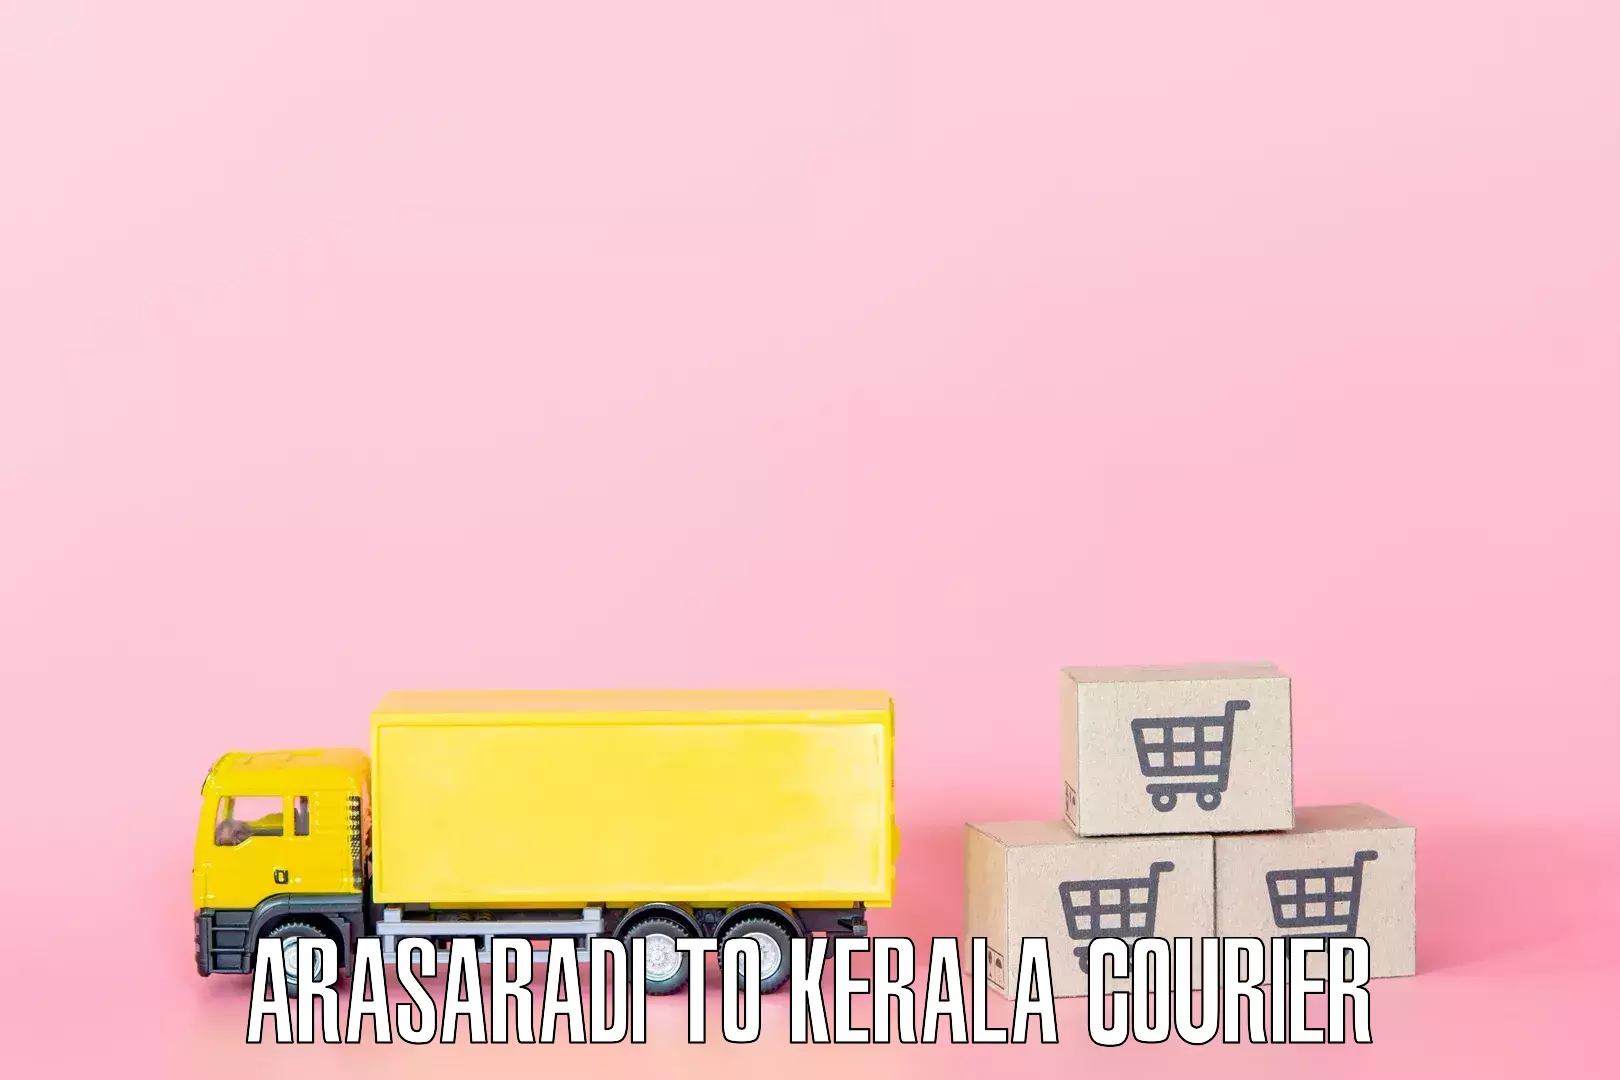 Efficient moving company Arasaradi to Kerala